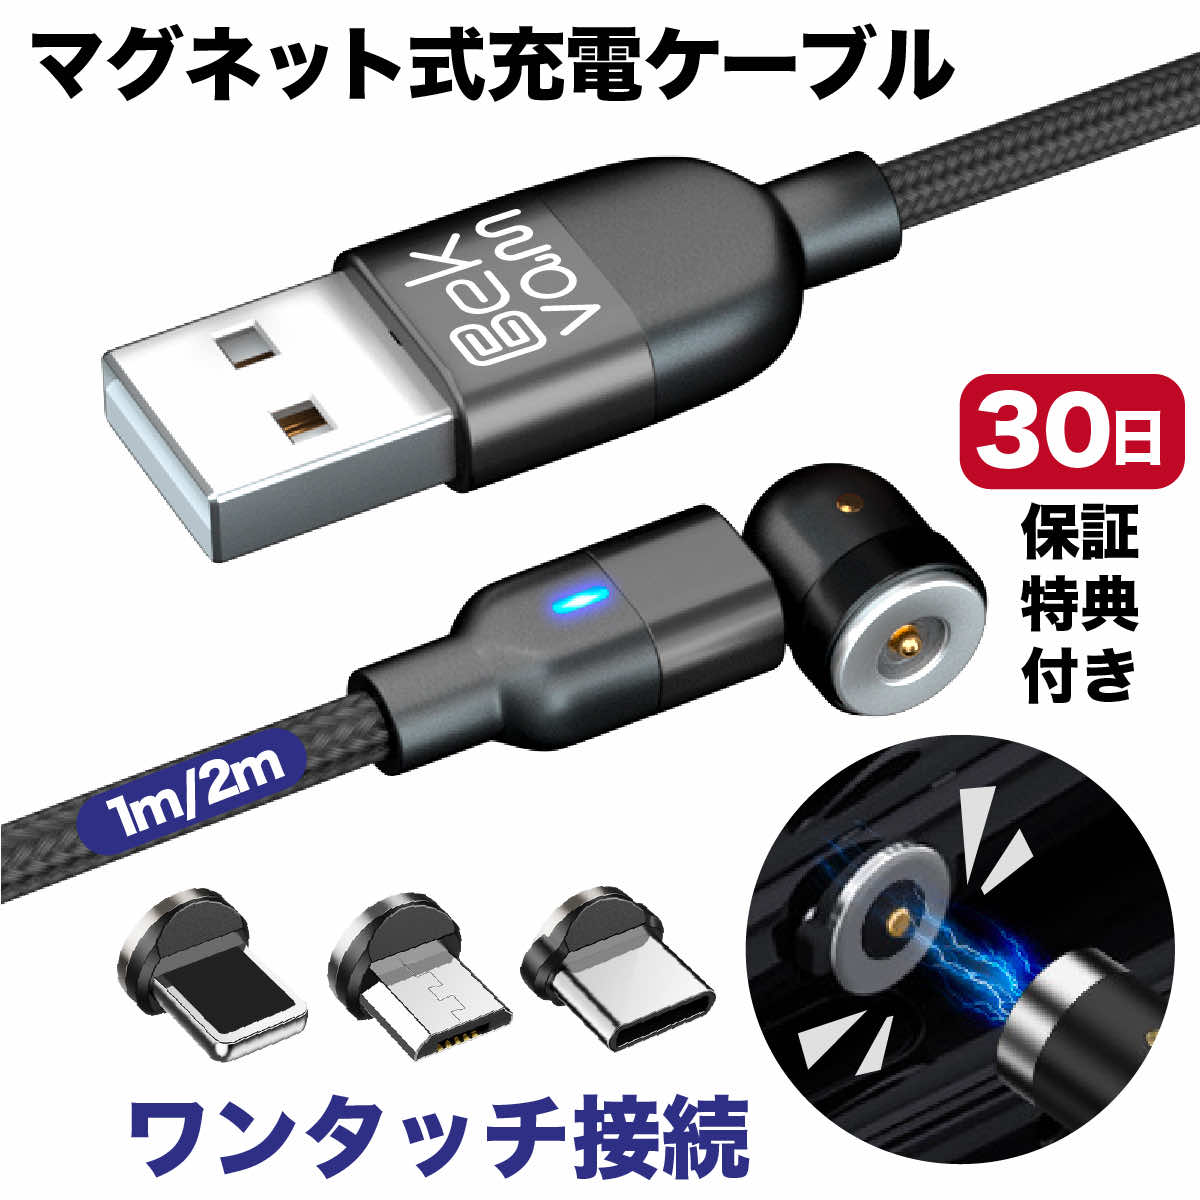 期間限定で特別価格 Micro-USB 50cm灰色１本曲るマグネット磁石式USB